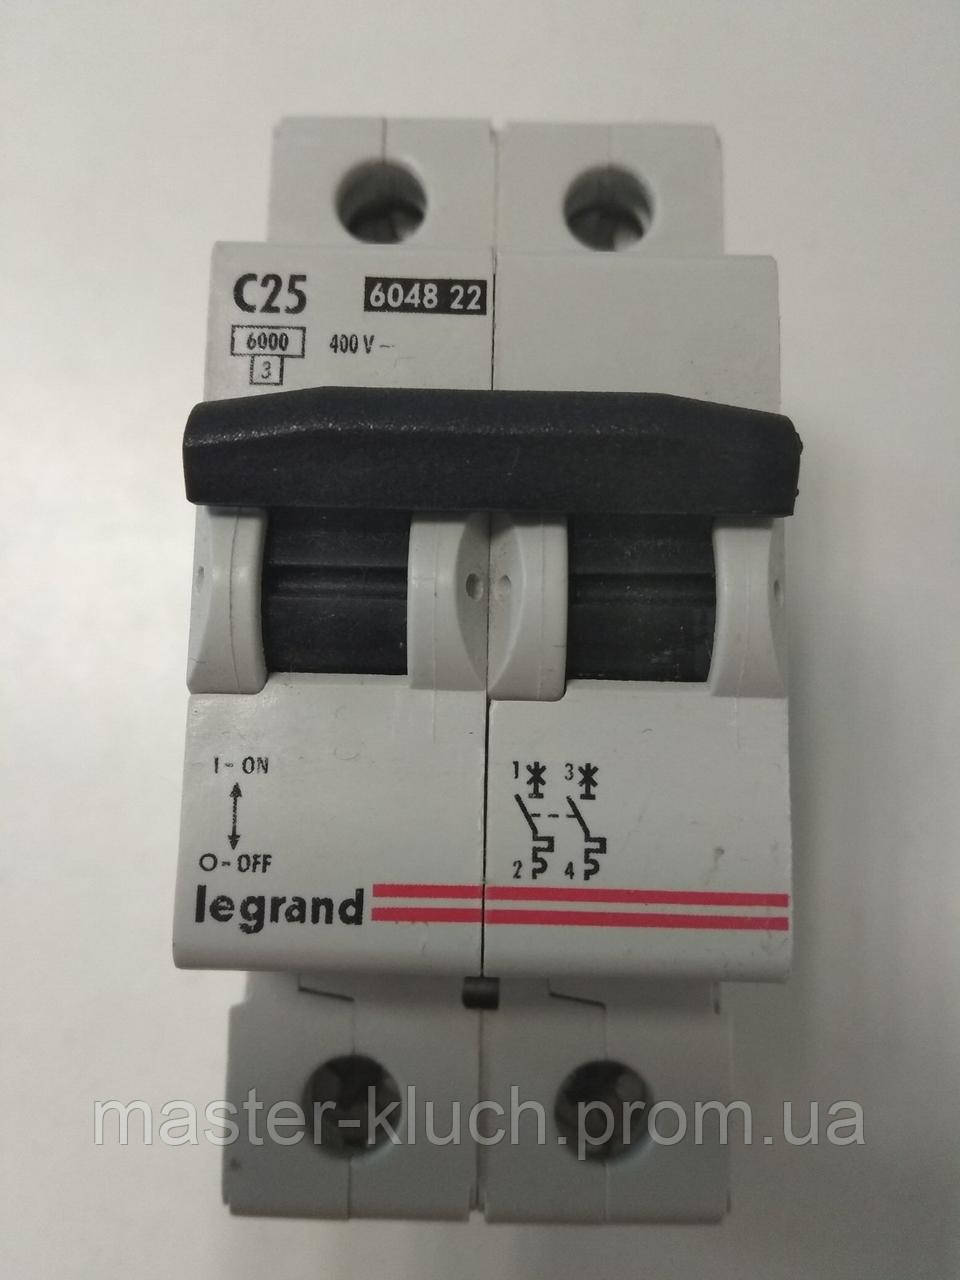 Автоматический выключатель legrand lr. Автомат Legrand LR 2/50 А.